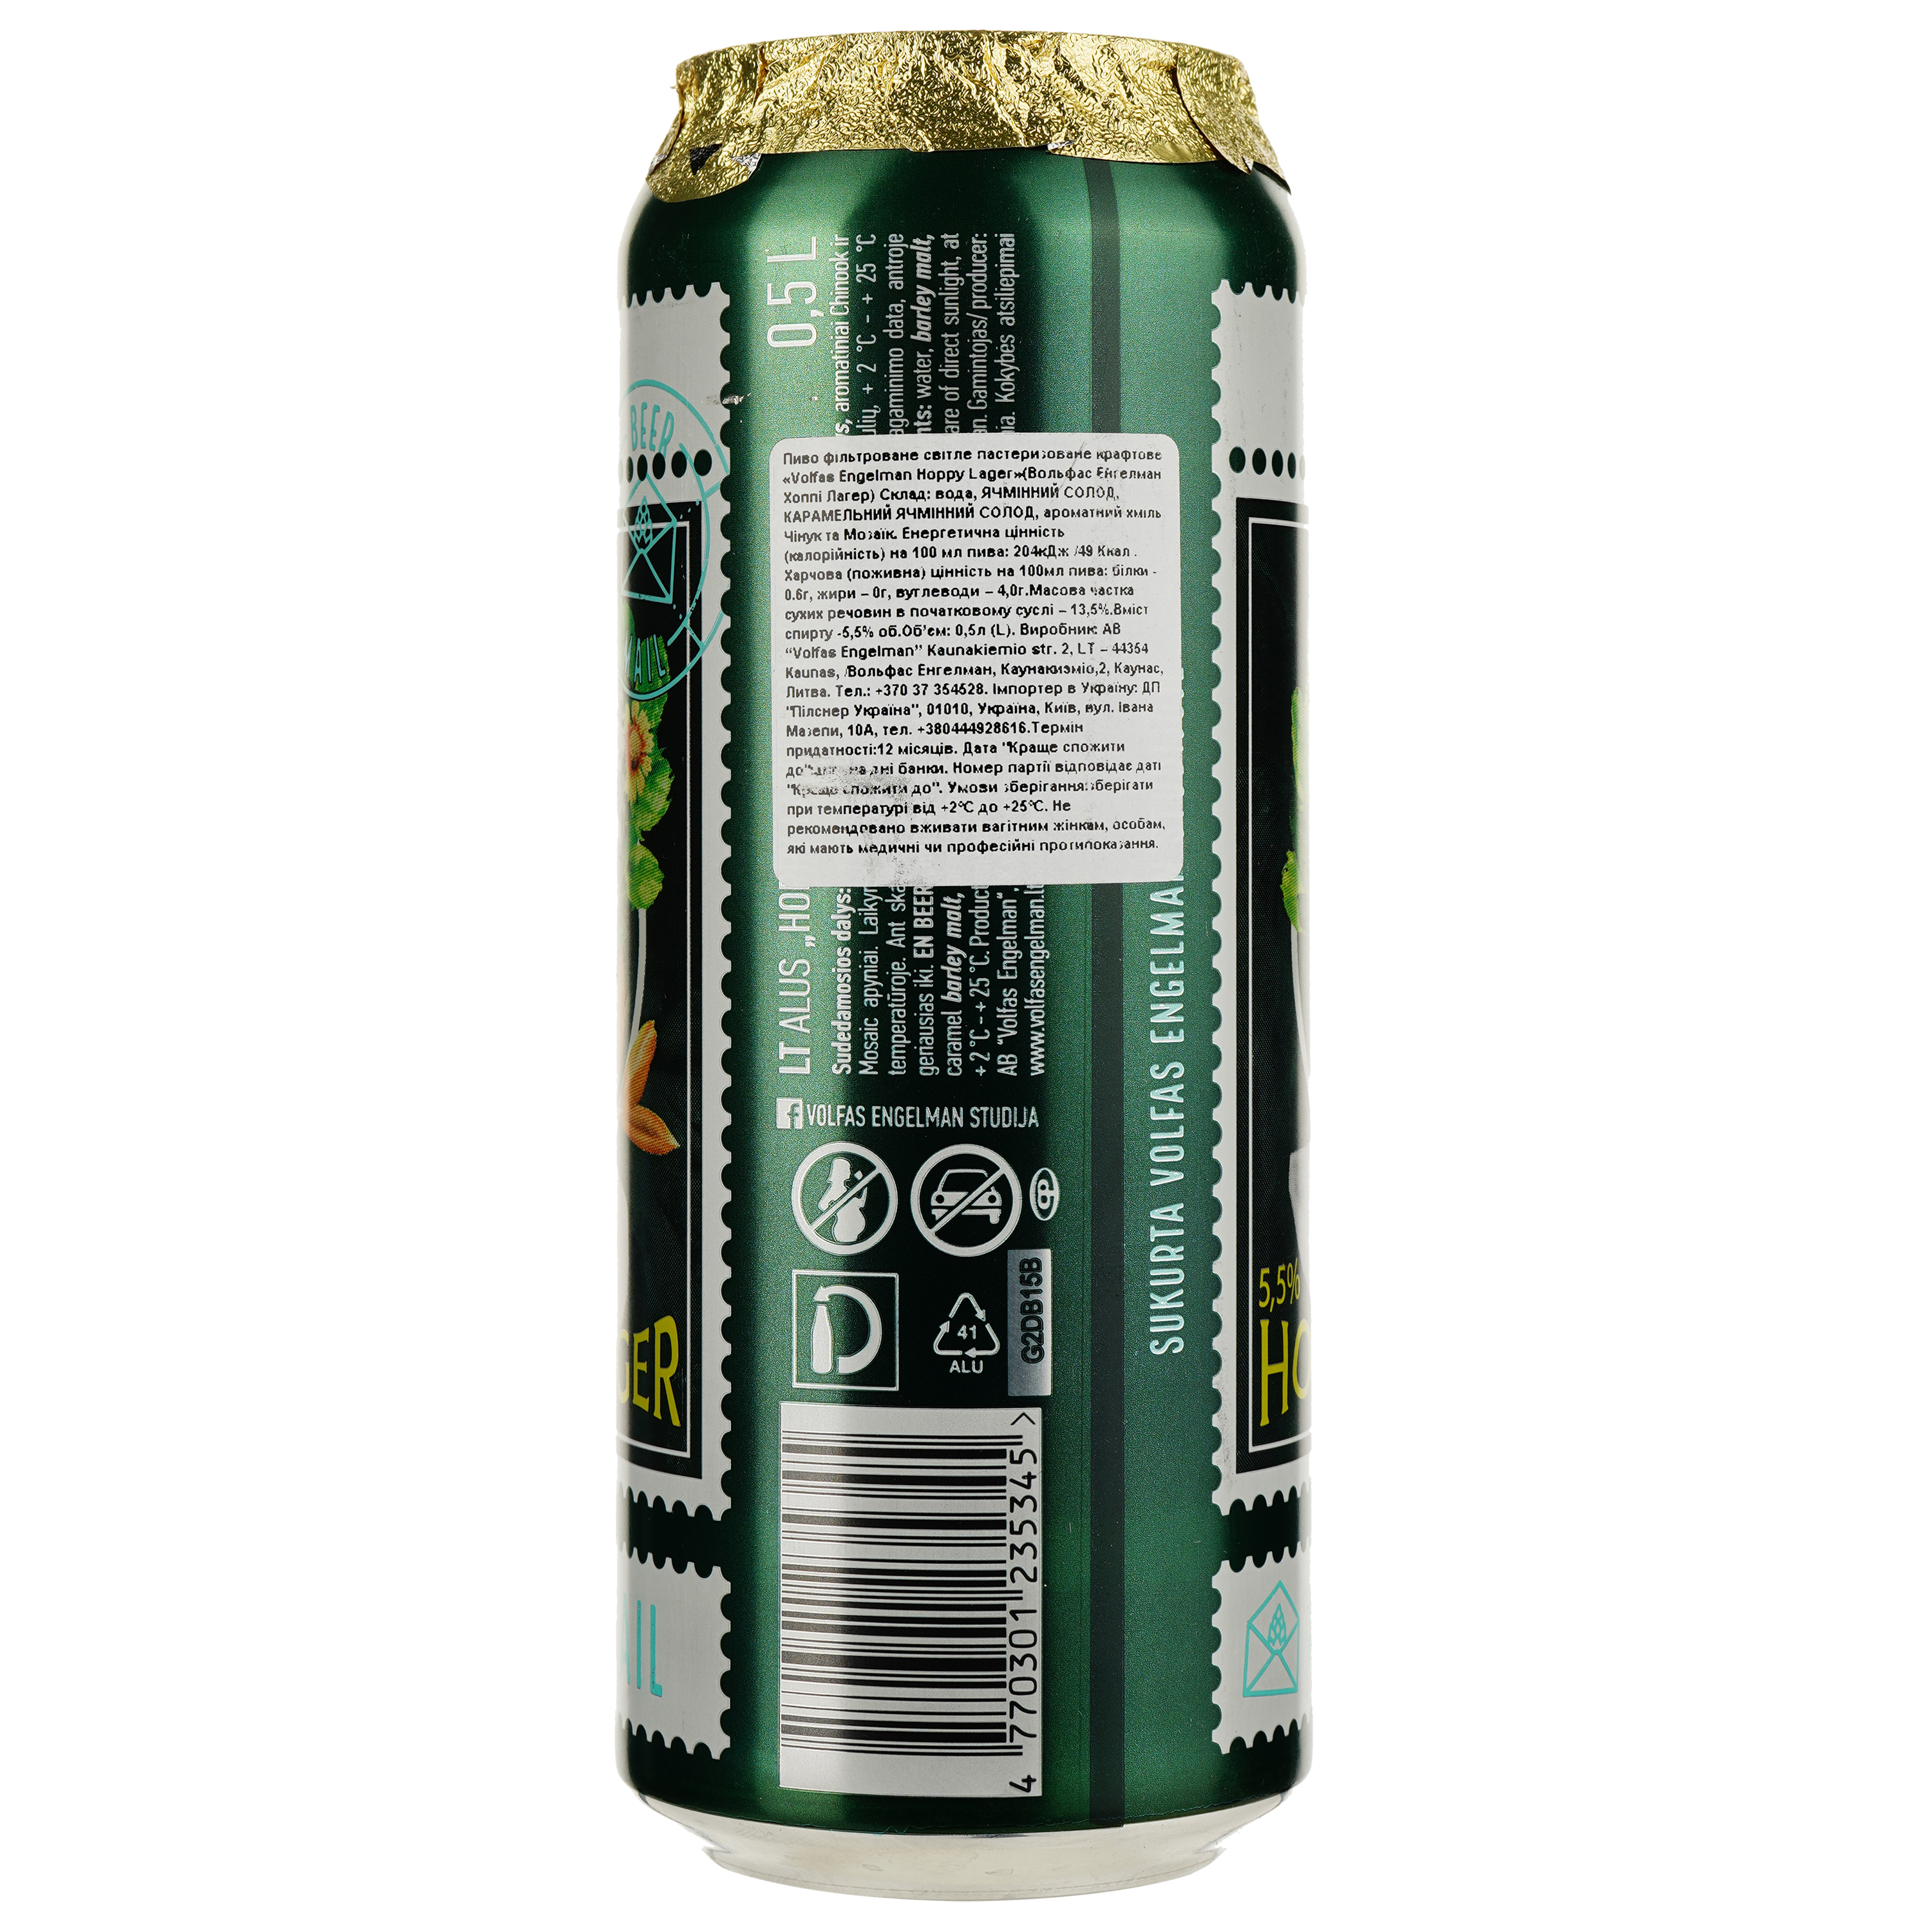 Пиво Volfas Engelman Hoppy lager, светлое, ж/б, 5,5%, 0,5 л - фото 2